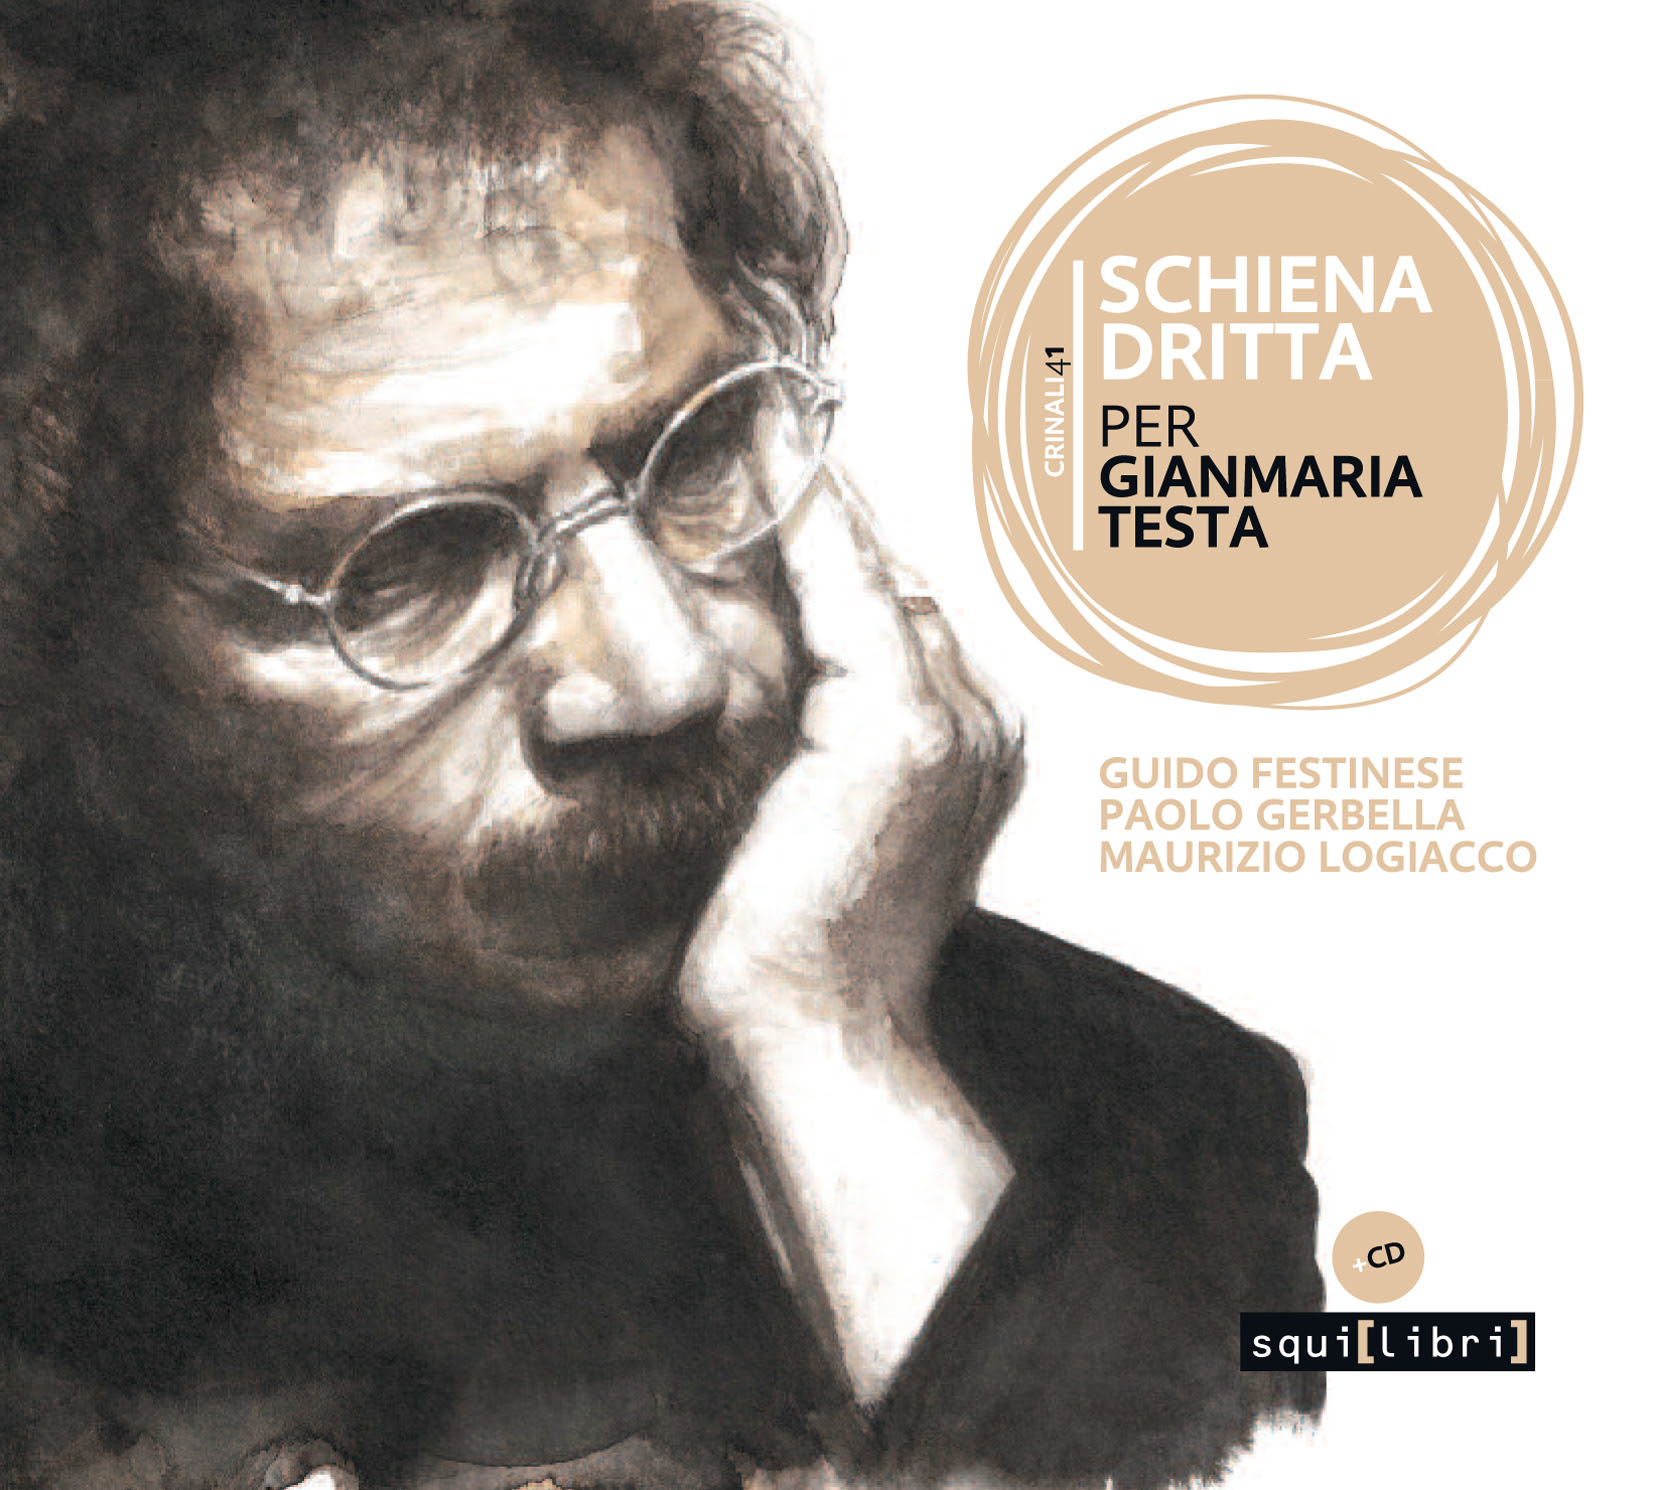 Schiena dritta. Per Gianmaria Testa un cd-book di  Guido Festinese, Paolo Gerbella e Maurizio Logiacco 